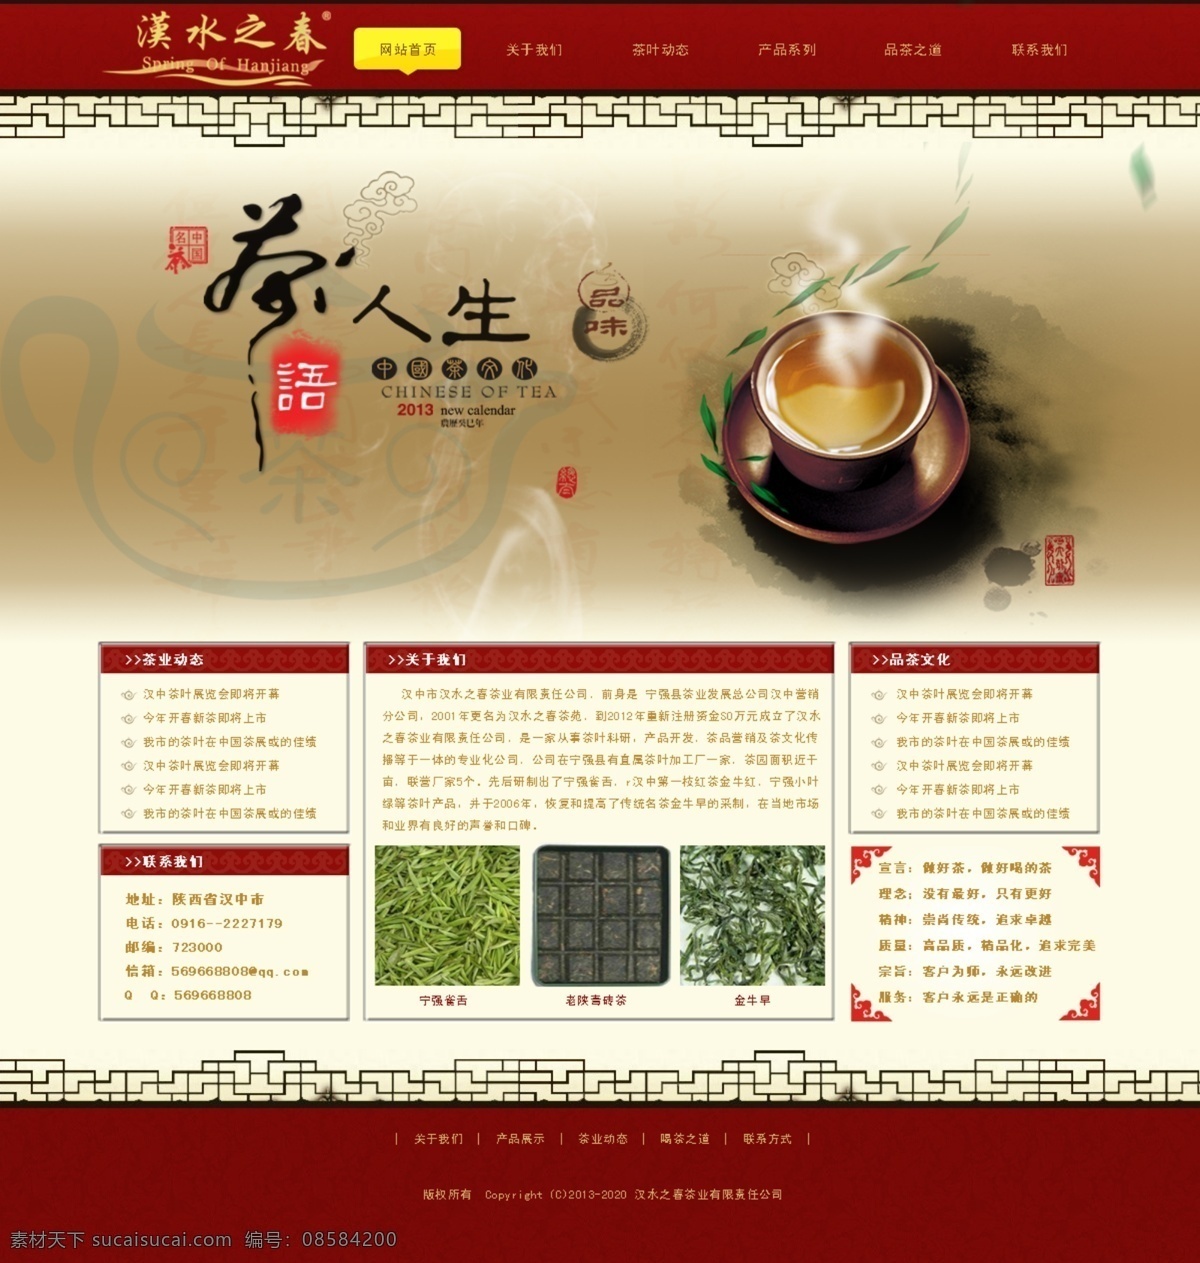 茶 茶叶 茶叶模板下载 茶叶素材下载 喝茶 品茶 网页模板 网站设计 茶网站 茶人生 中文模板 源文件 psd源文件 餐饮素材